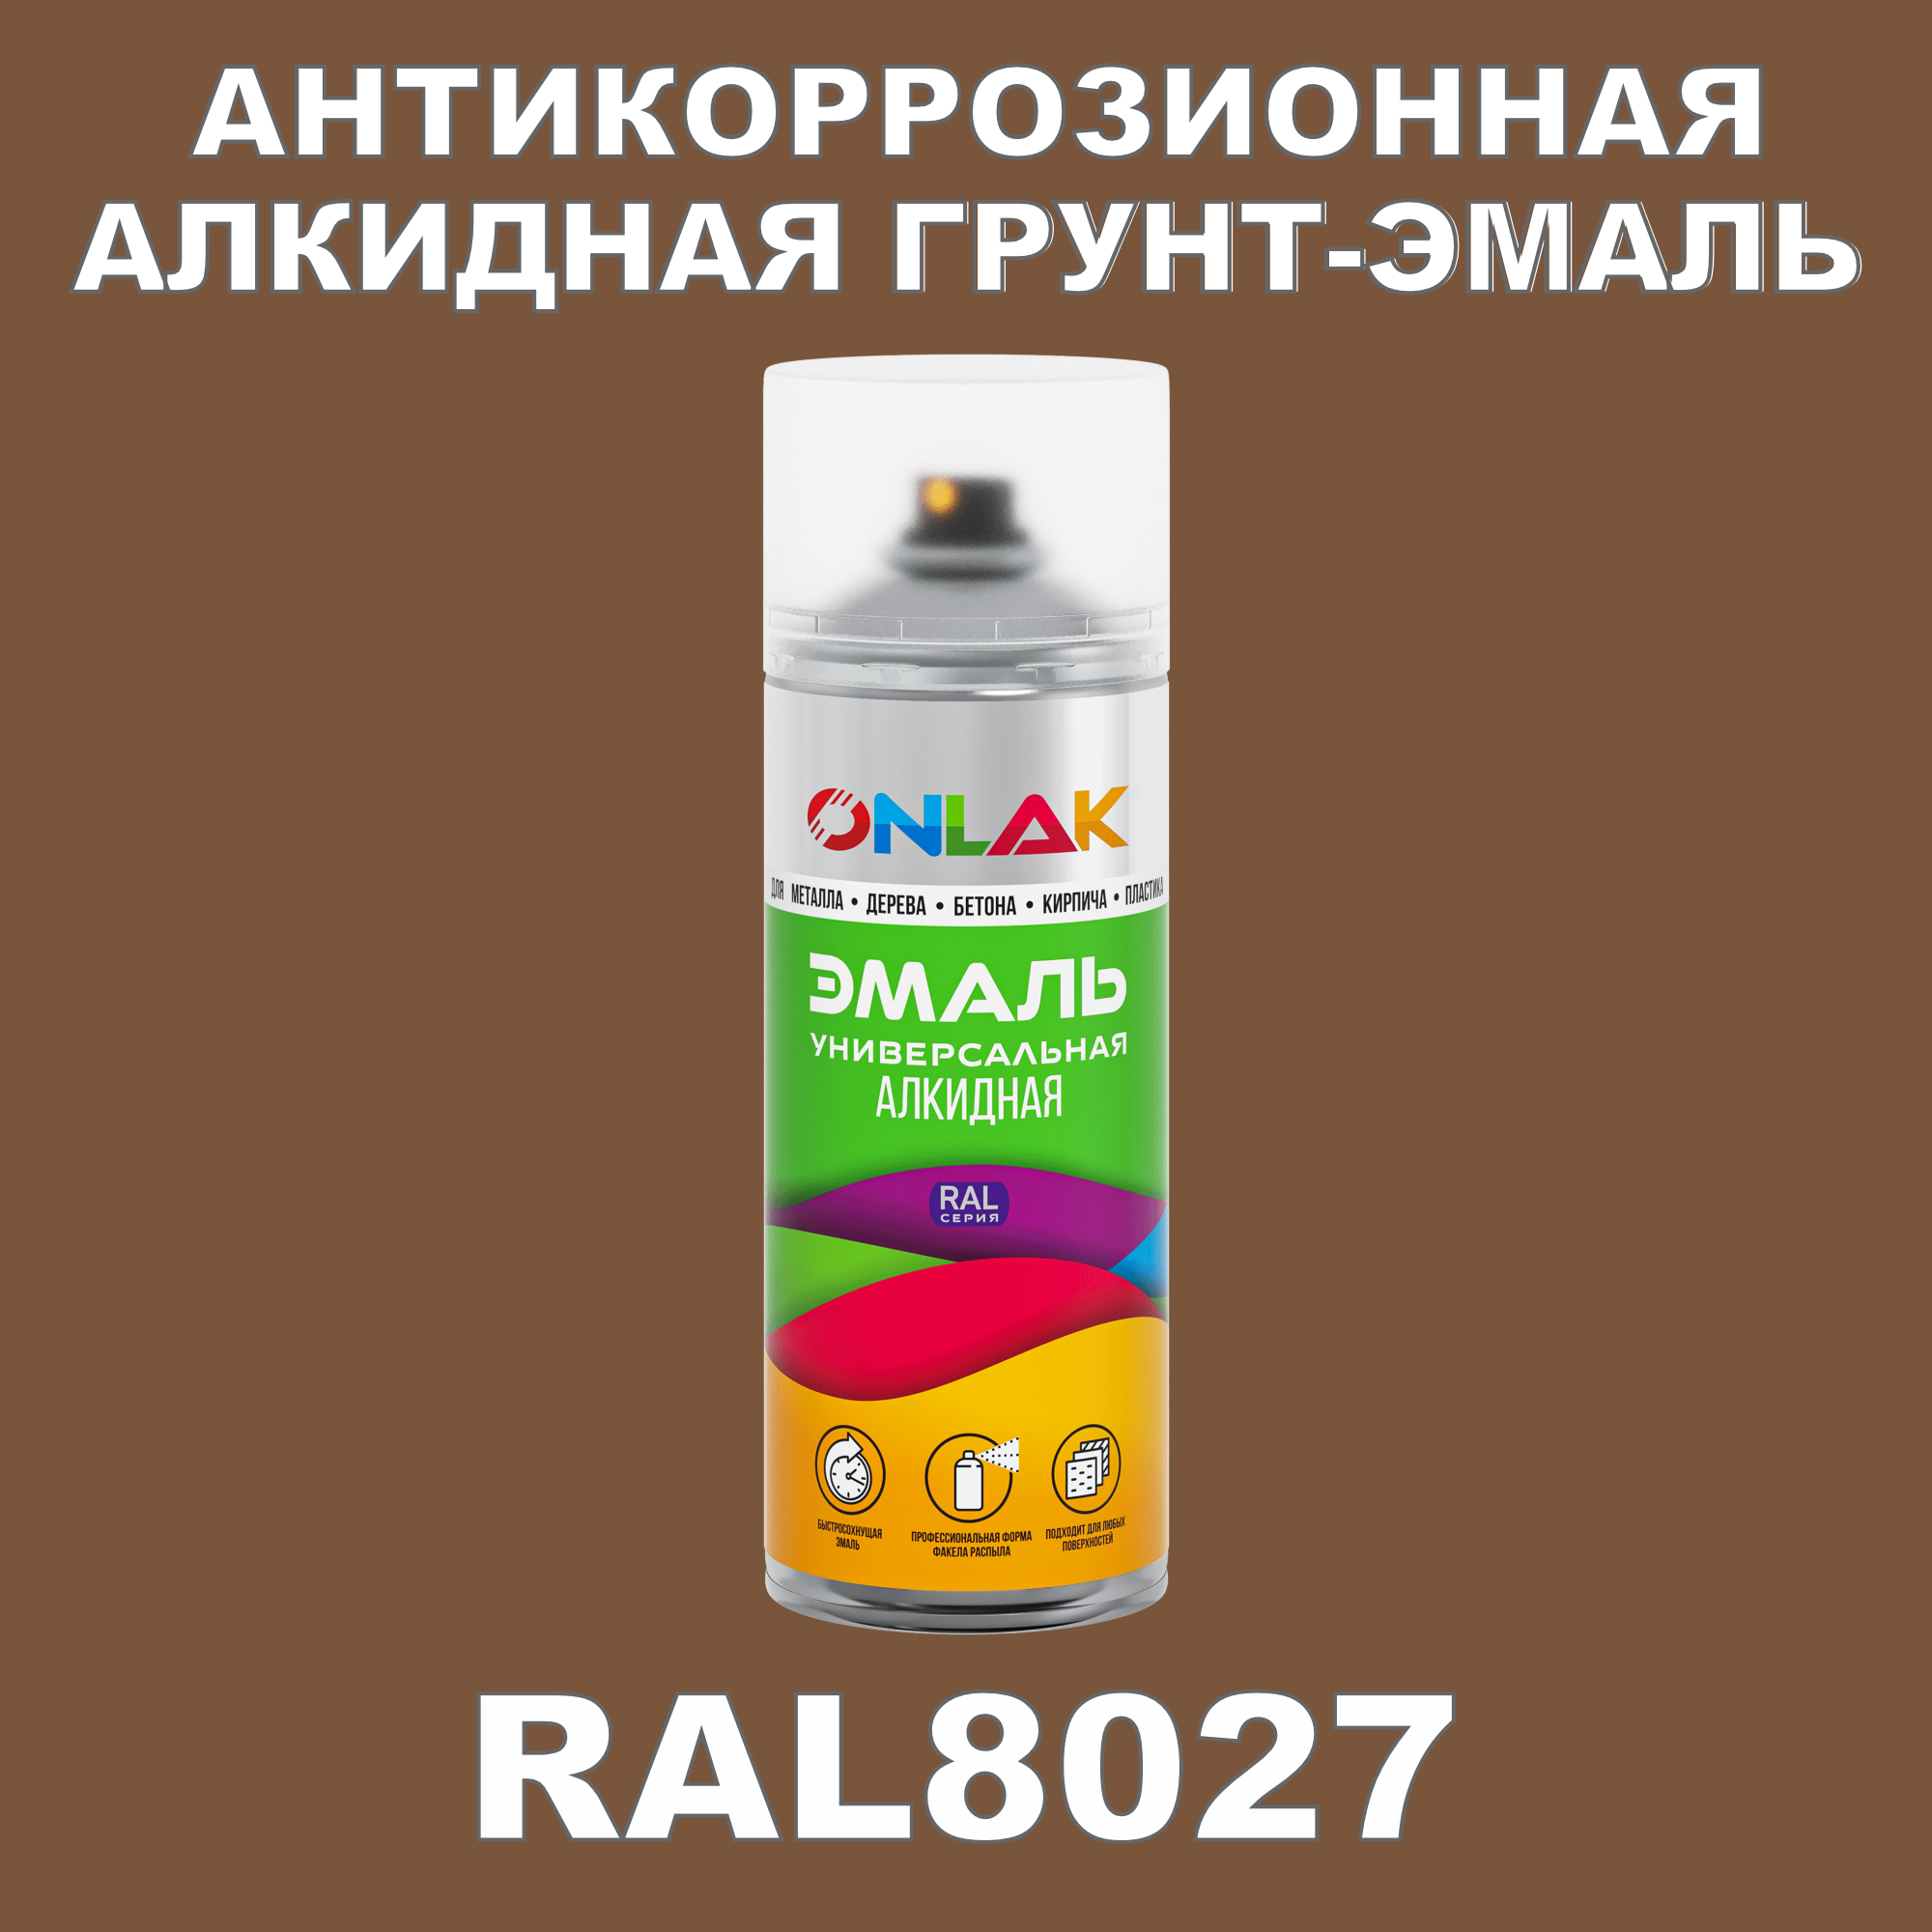 Антикоррозионная грунт-эмаль ONLAK RAL8027 полуматовая для металла и защиты от ржавчины